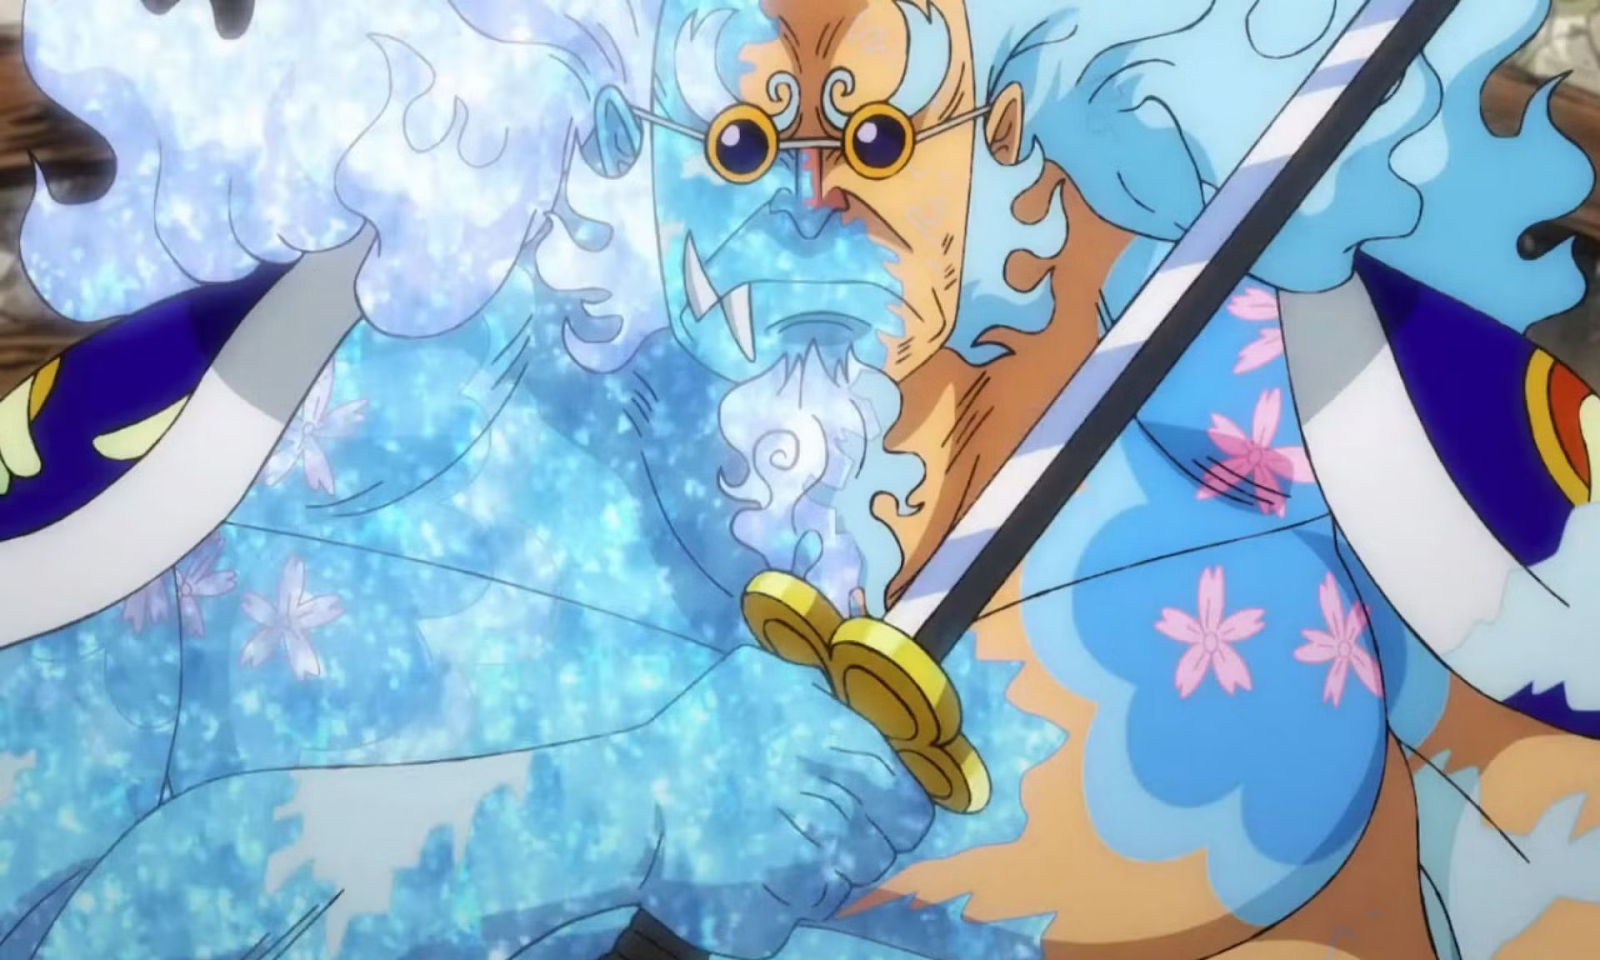 Hyogoro in One Piece.